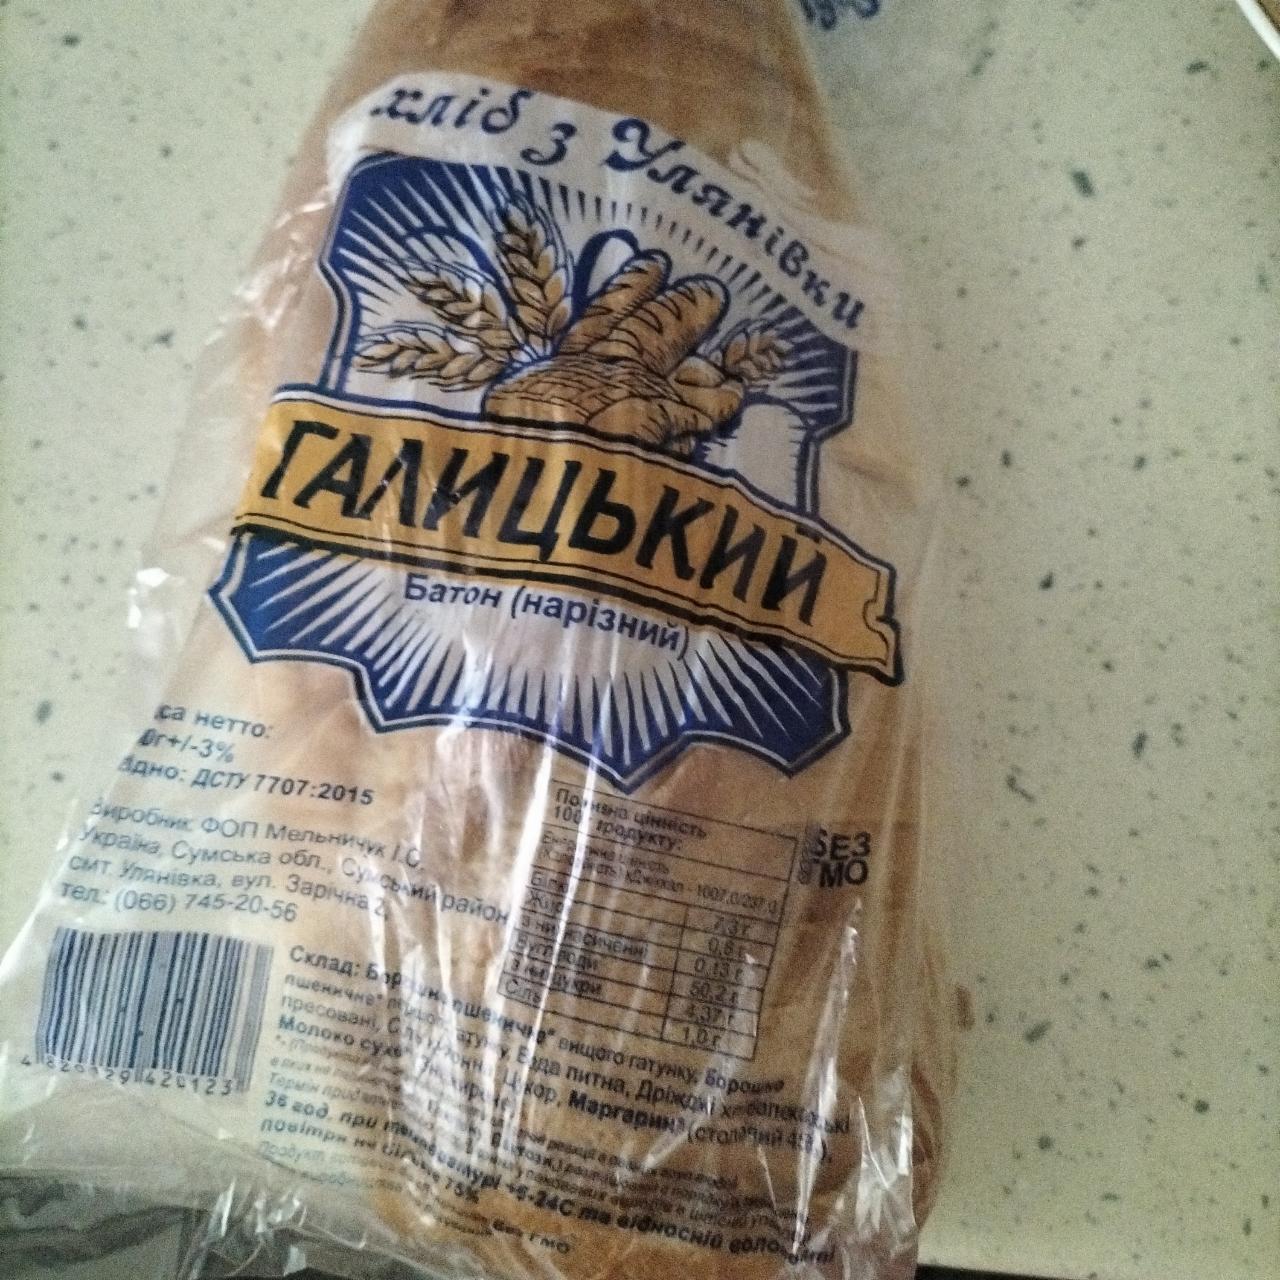 Фото - Батон Галицький нарезной Хліб з Улянівки